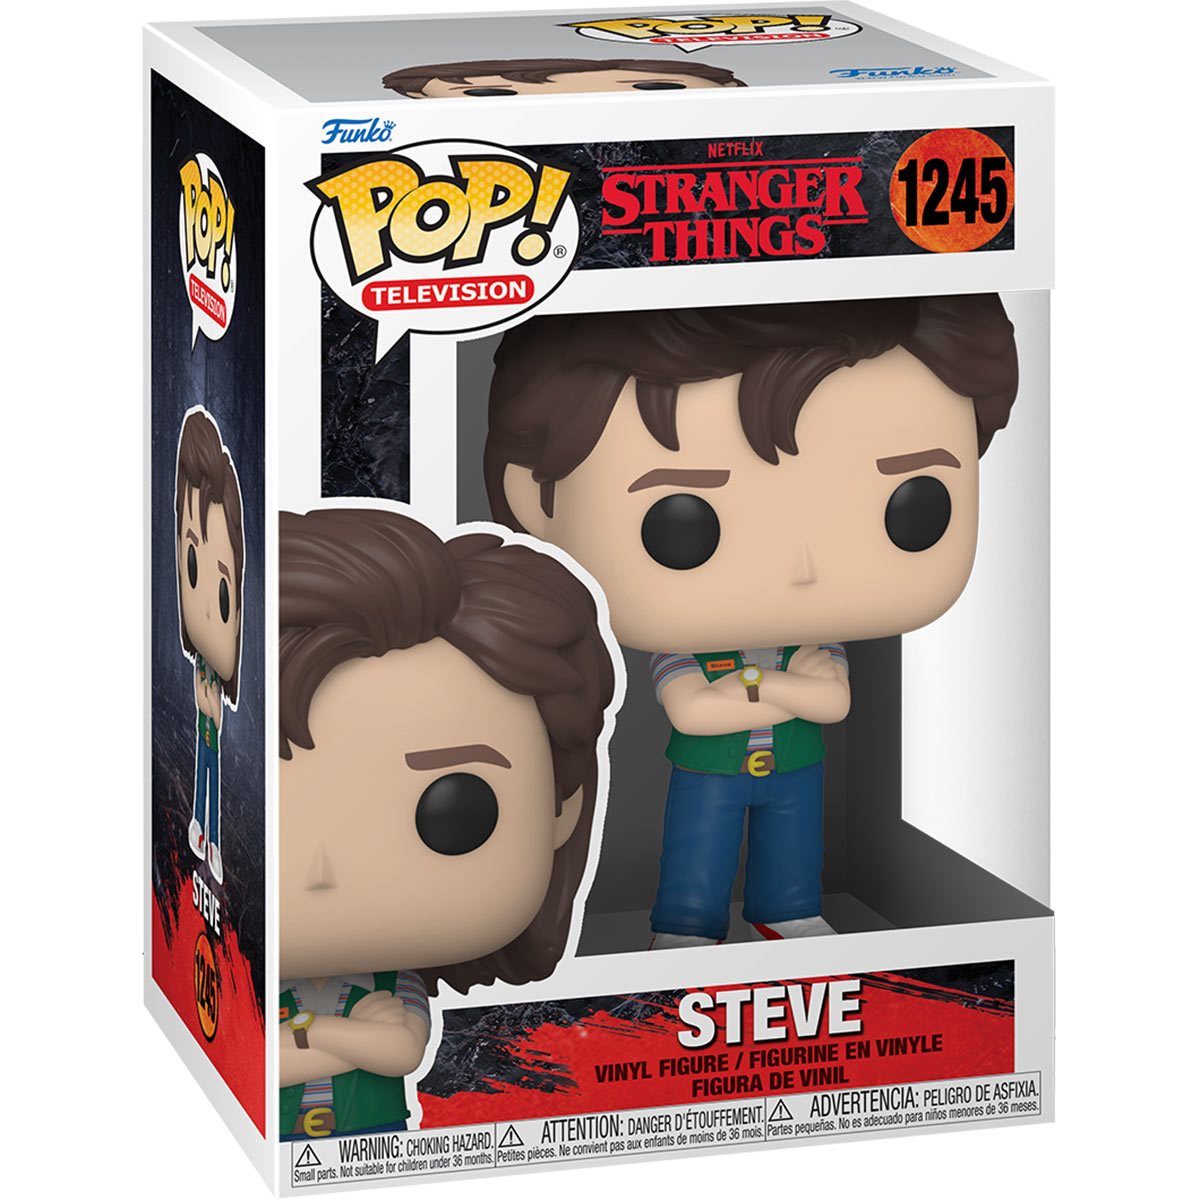 Steve Stranger Things Pop! Vinyl Figure